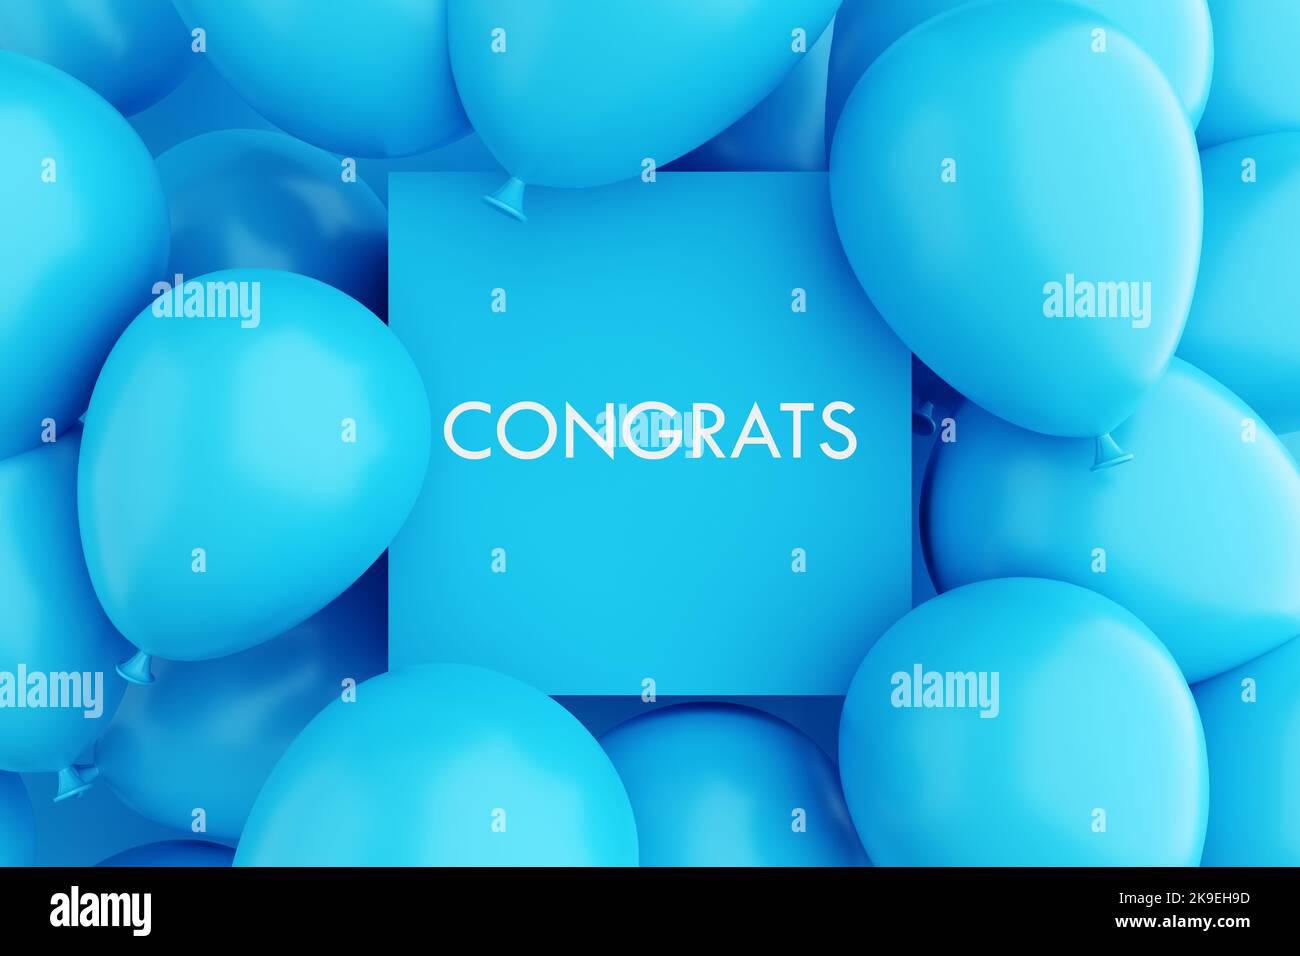 Cornice segno blu con il messaggio CONGRATS circondato da palloncini blu d'aria. Messaggio di congratulazioni. Rendering 3D. Foto Stock